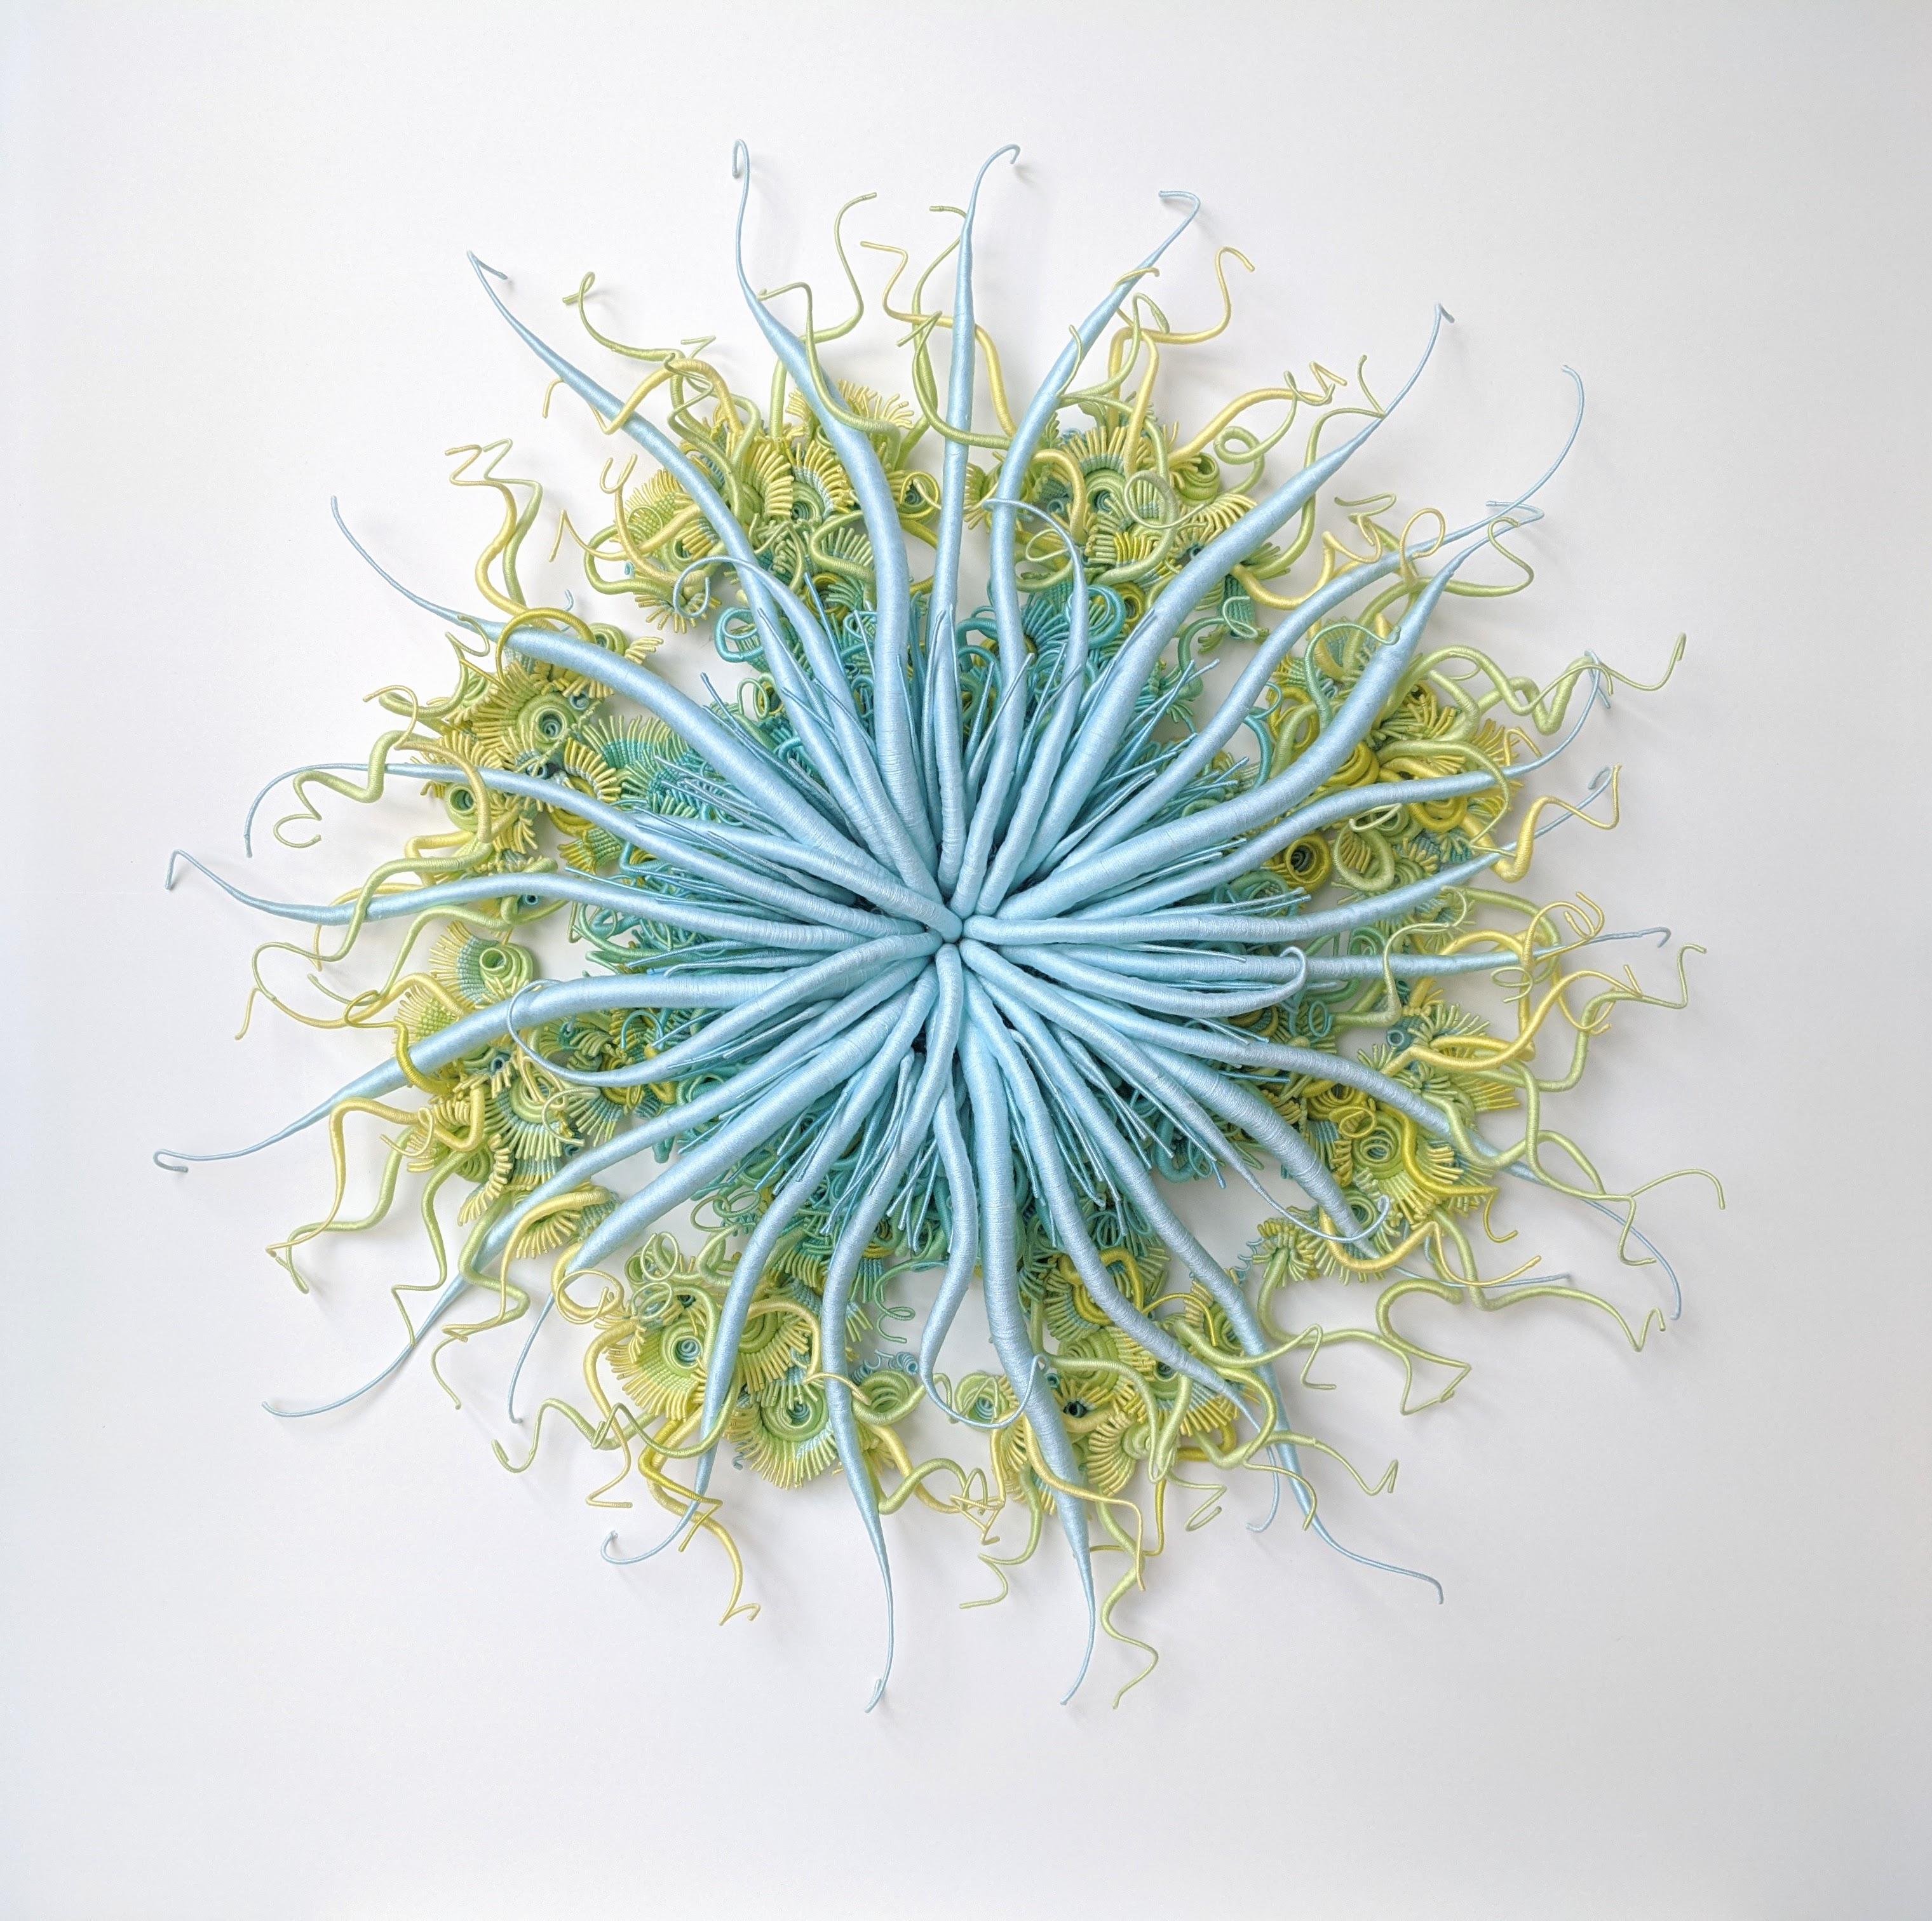 Specimen 18, gerahmte, von der Natur inspirierte blau-grüne handgefärbte Faserskulptur